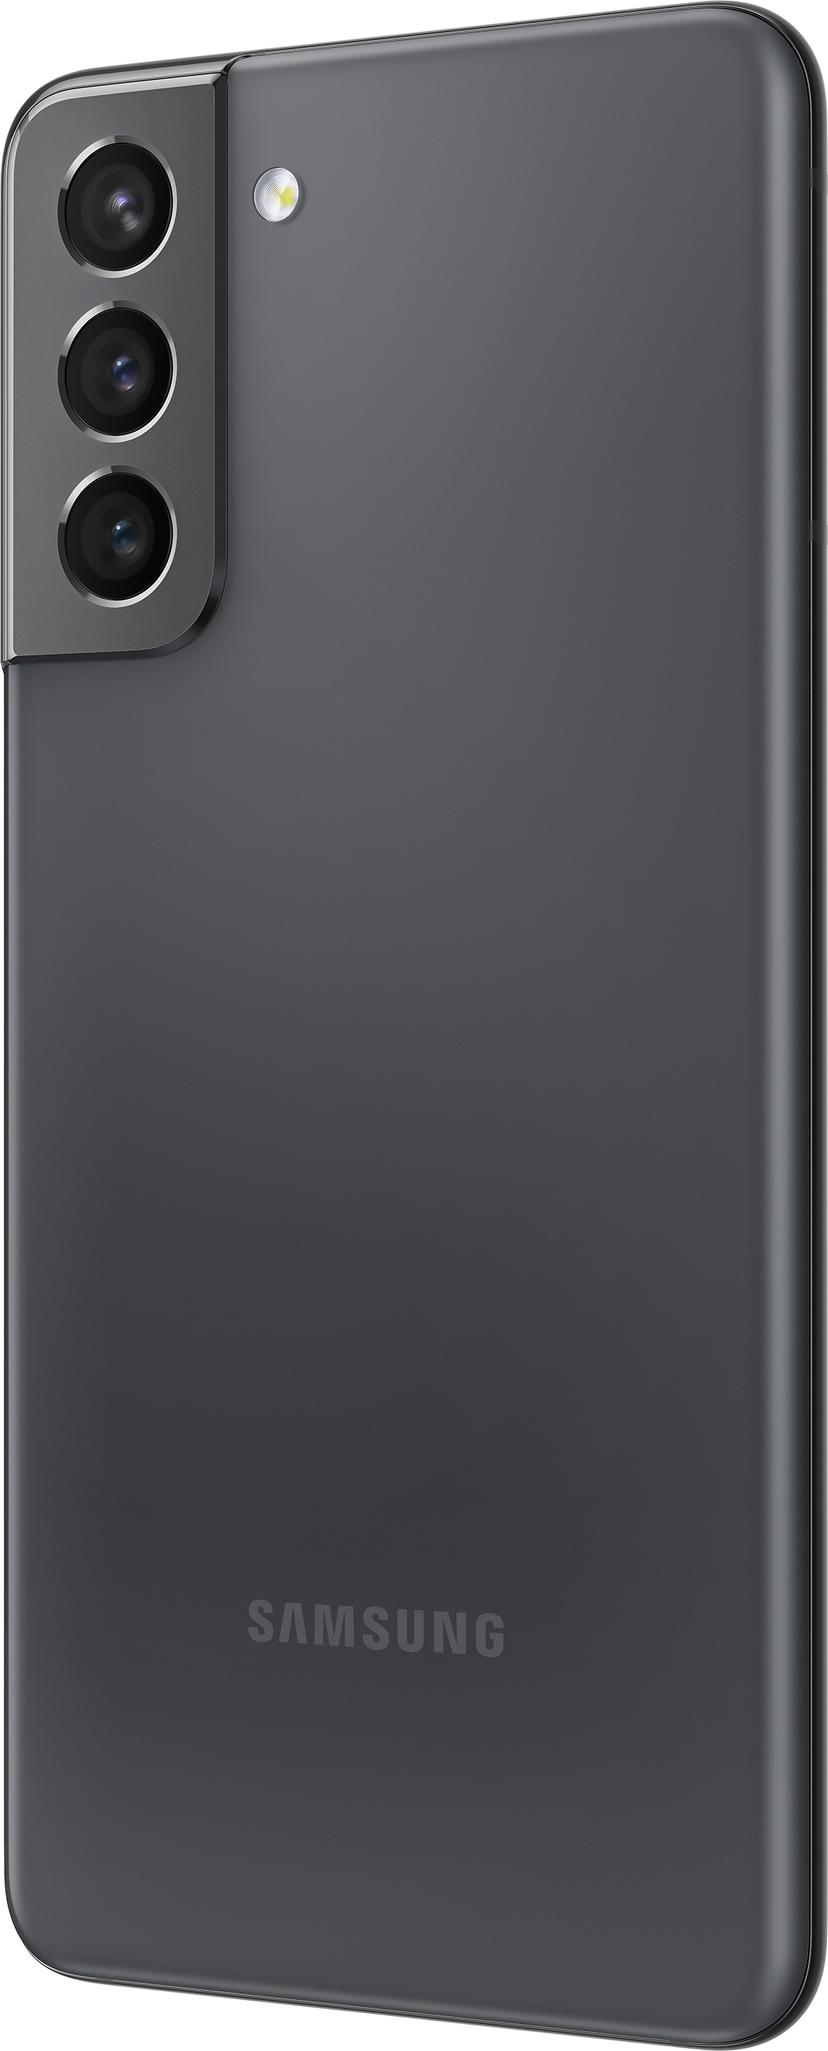 Samsung Galaxy S21 5G Enterprise Edition 128GB Dual-SIM Fantom grå